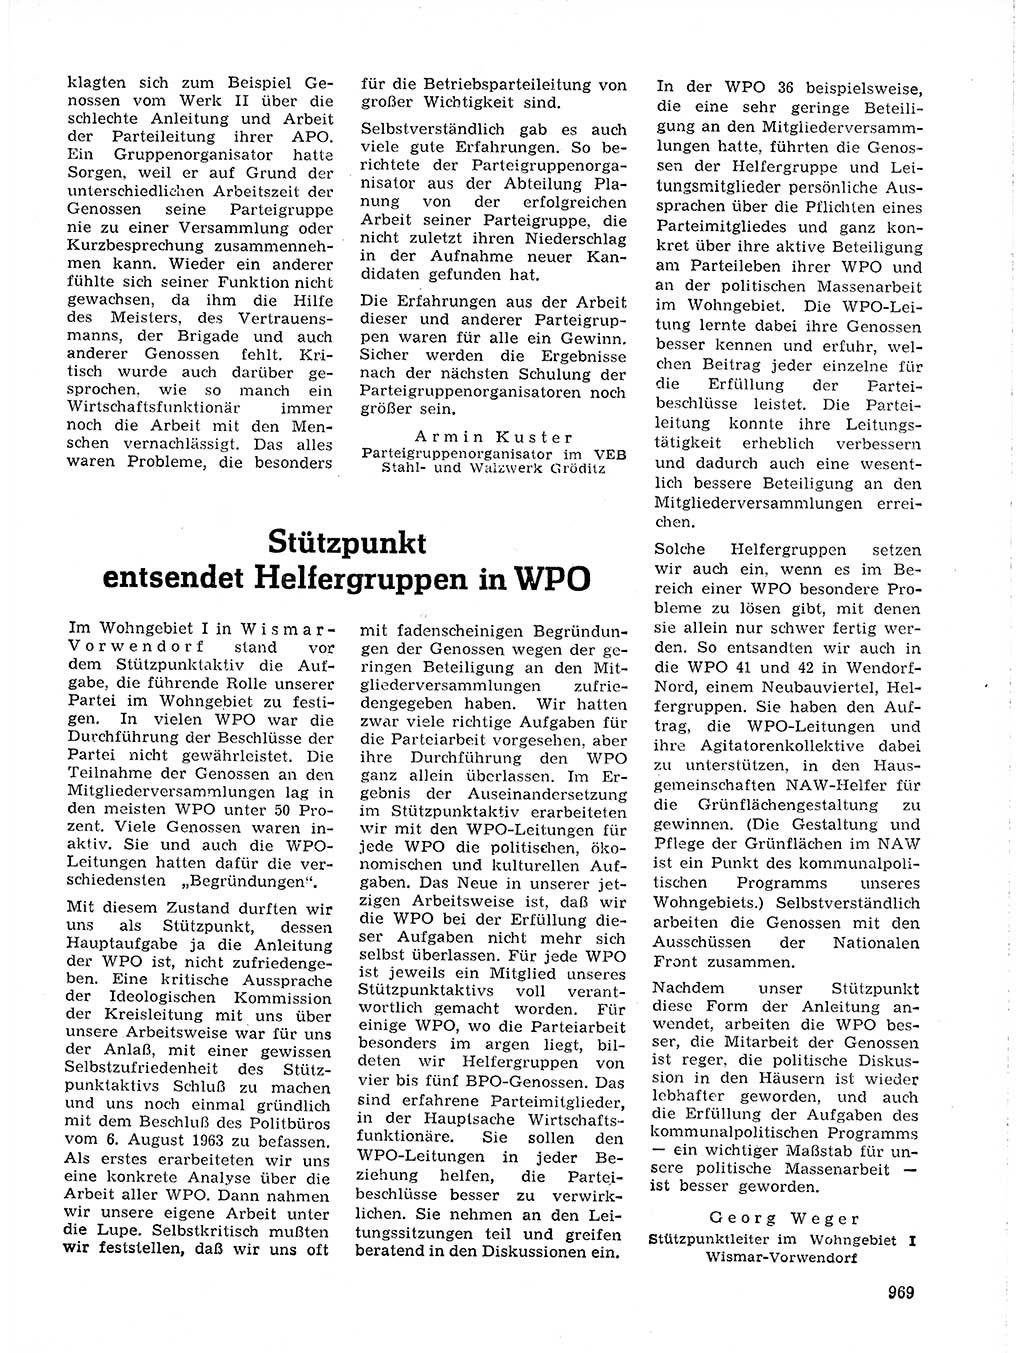 Neuer Weg (NW), Organ des Zentralkomitees (ZK) der SED (Sozialistische Einheitspartei Deutschlands) für Fragen des Parteilebens, 19. Jahrgang [Deutsche Demokratische Republik (DDR)] 1964, Seite 969 (NW ZK SED DDR 1964, S. 969)